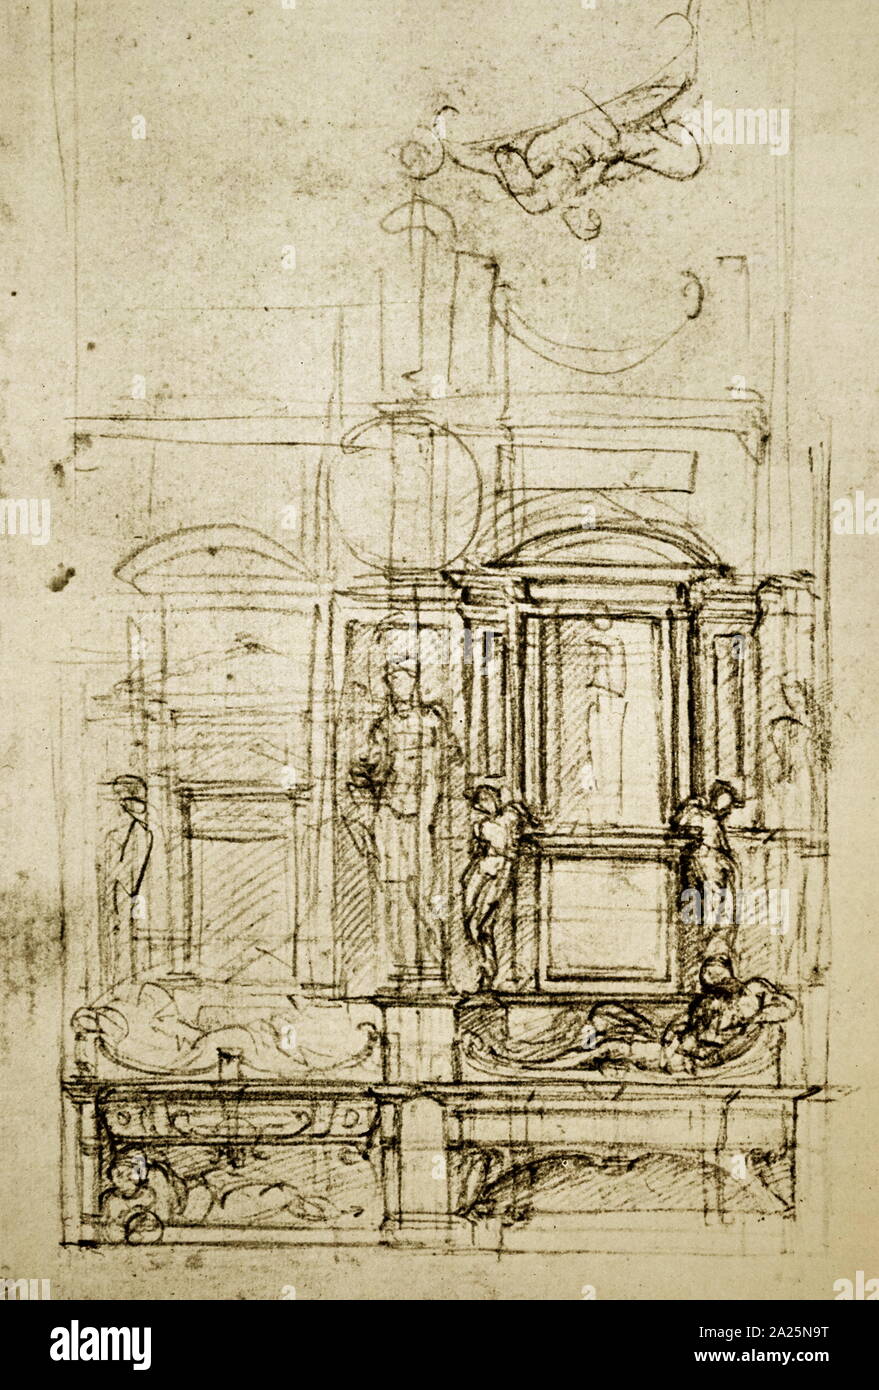 Skizze von Michelangelo. Michelangelo di Lodovico Buonarroti Simoni (1475-1564) ein italienischer Bildhauer, Maler, Architekt und Dichter der Renaissance. Stockfoto